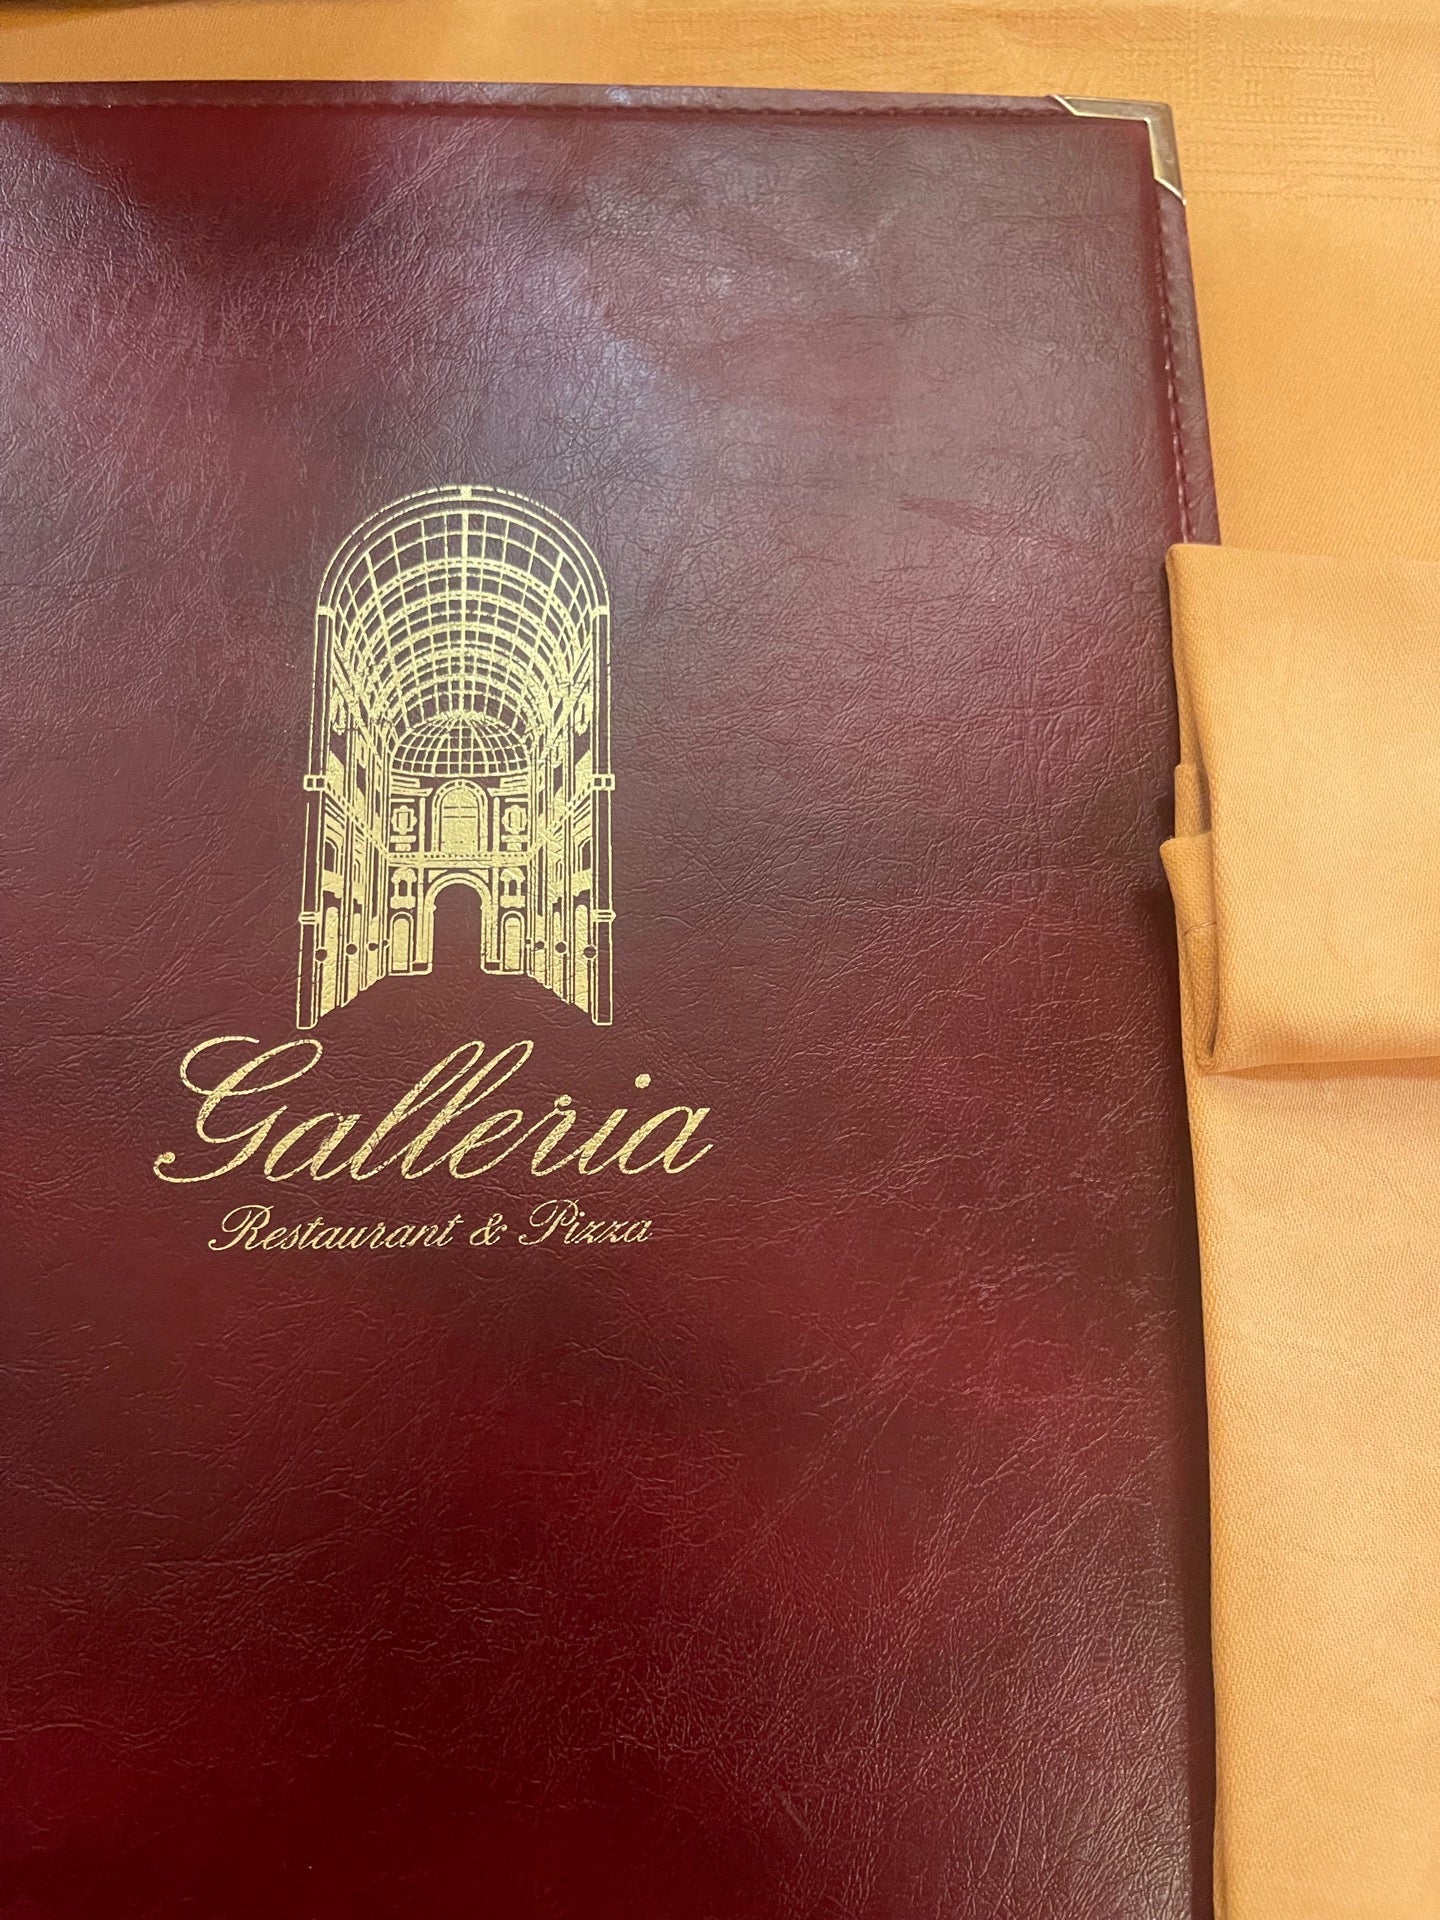 Galleria Restaurant & Pizza